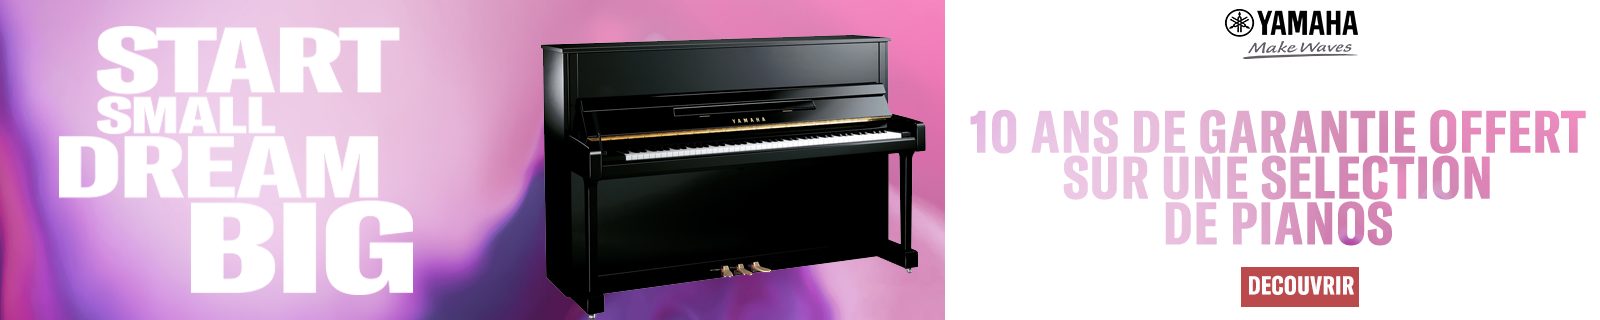 Piano 1600x320